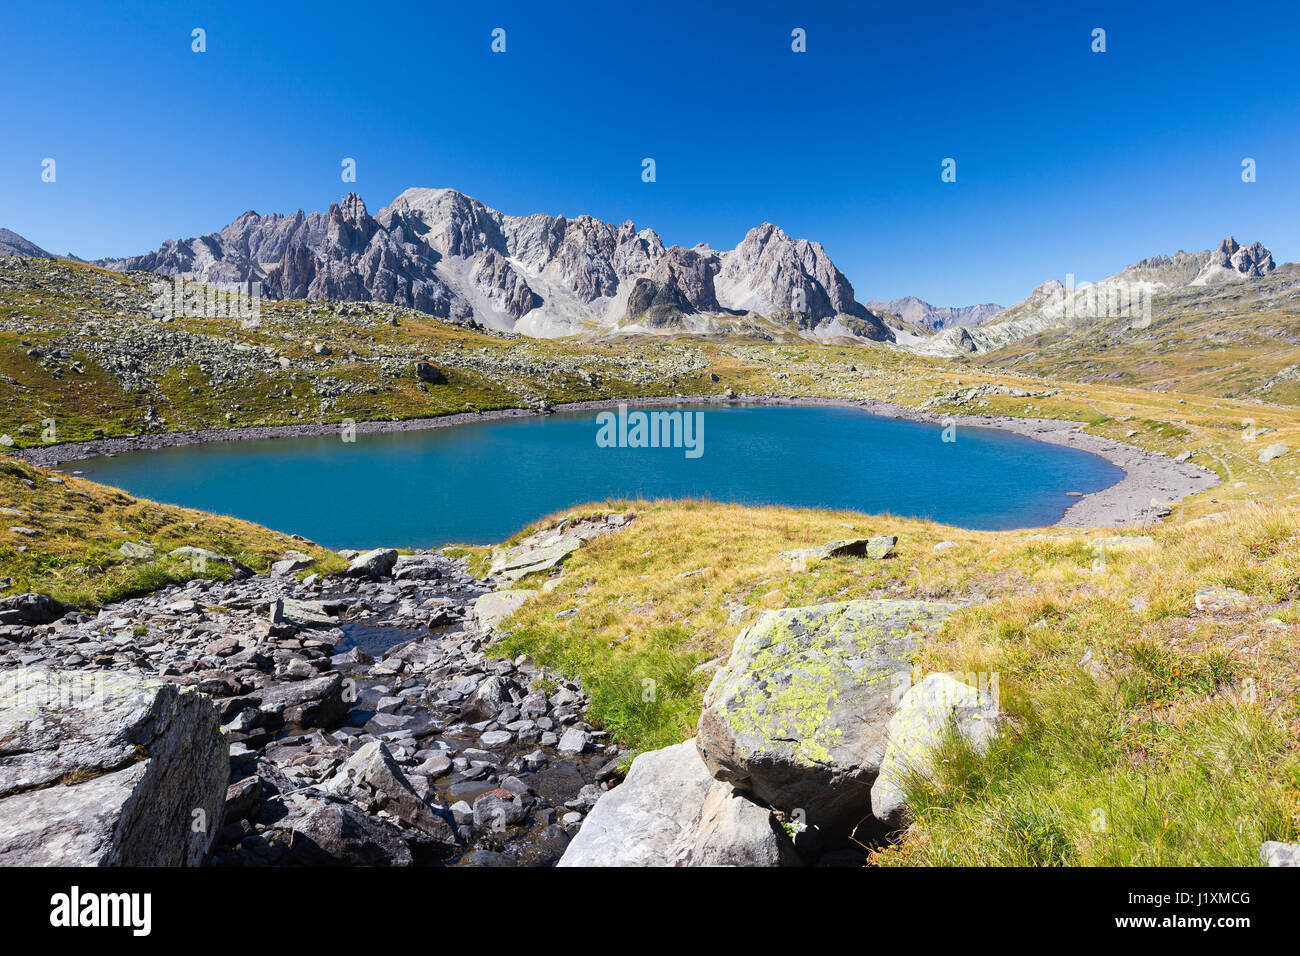 Vallée de la Clarée. Lac Rond. Névache. Hautes Alpes. France, Europe. Stock Photo